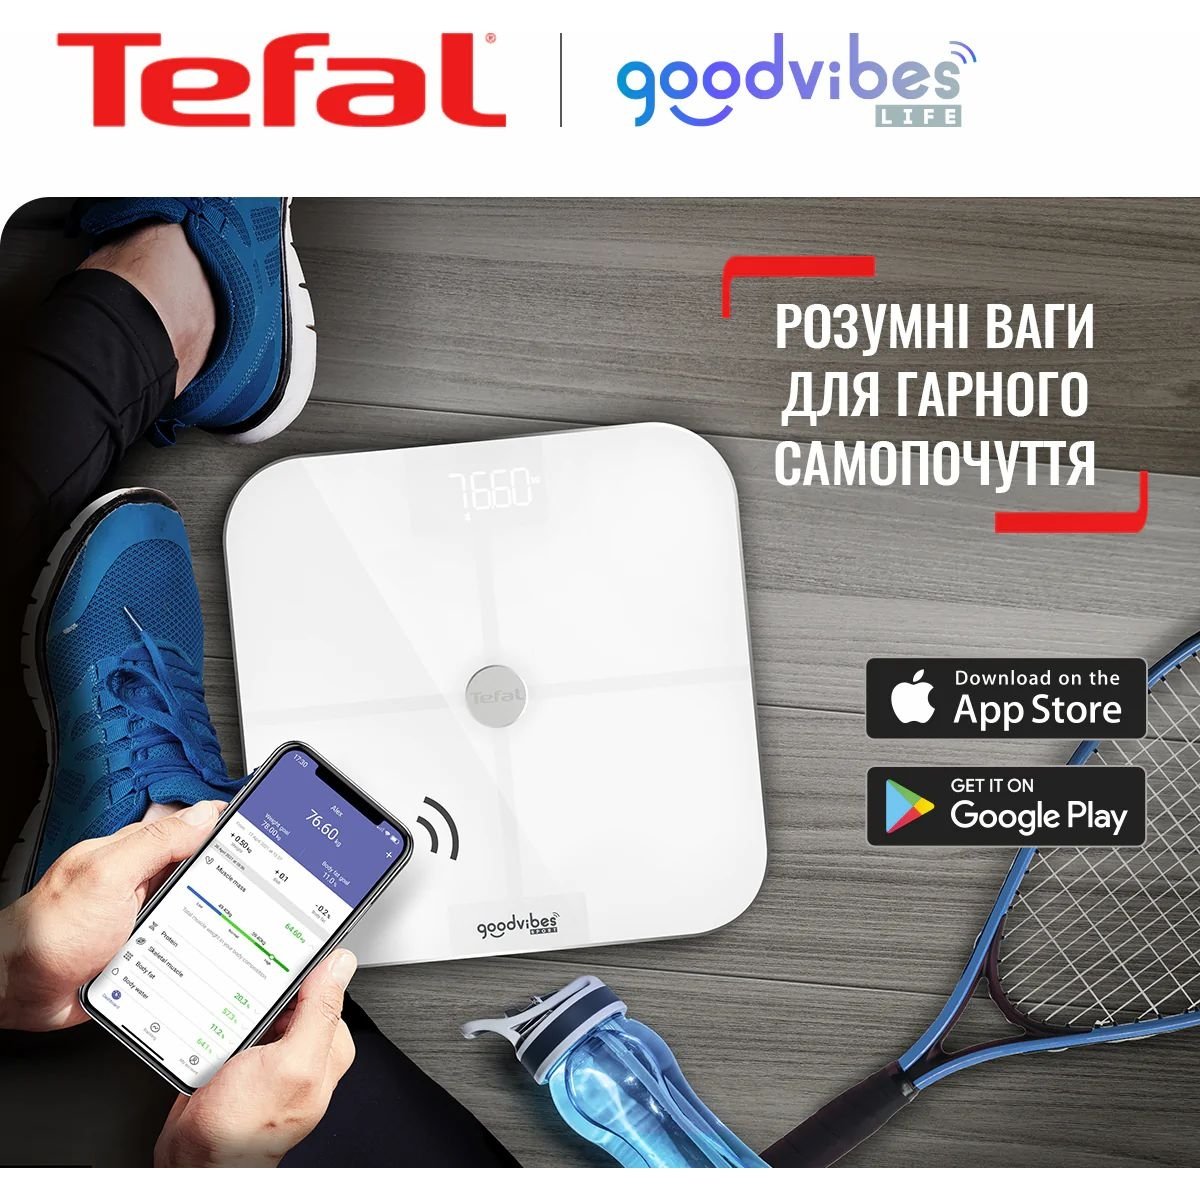 Ваги підлогові Tefal Goodvibes Sport Bluetooth 180 кг 4xAAA в комплекті скло білі - фото 4